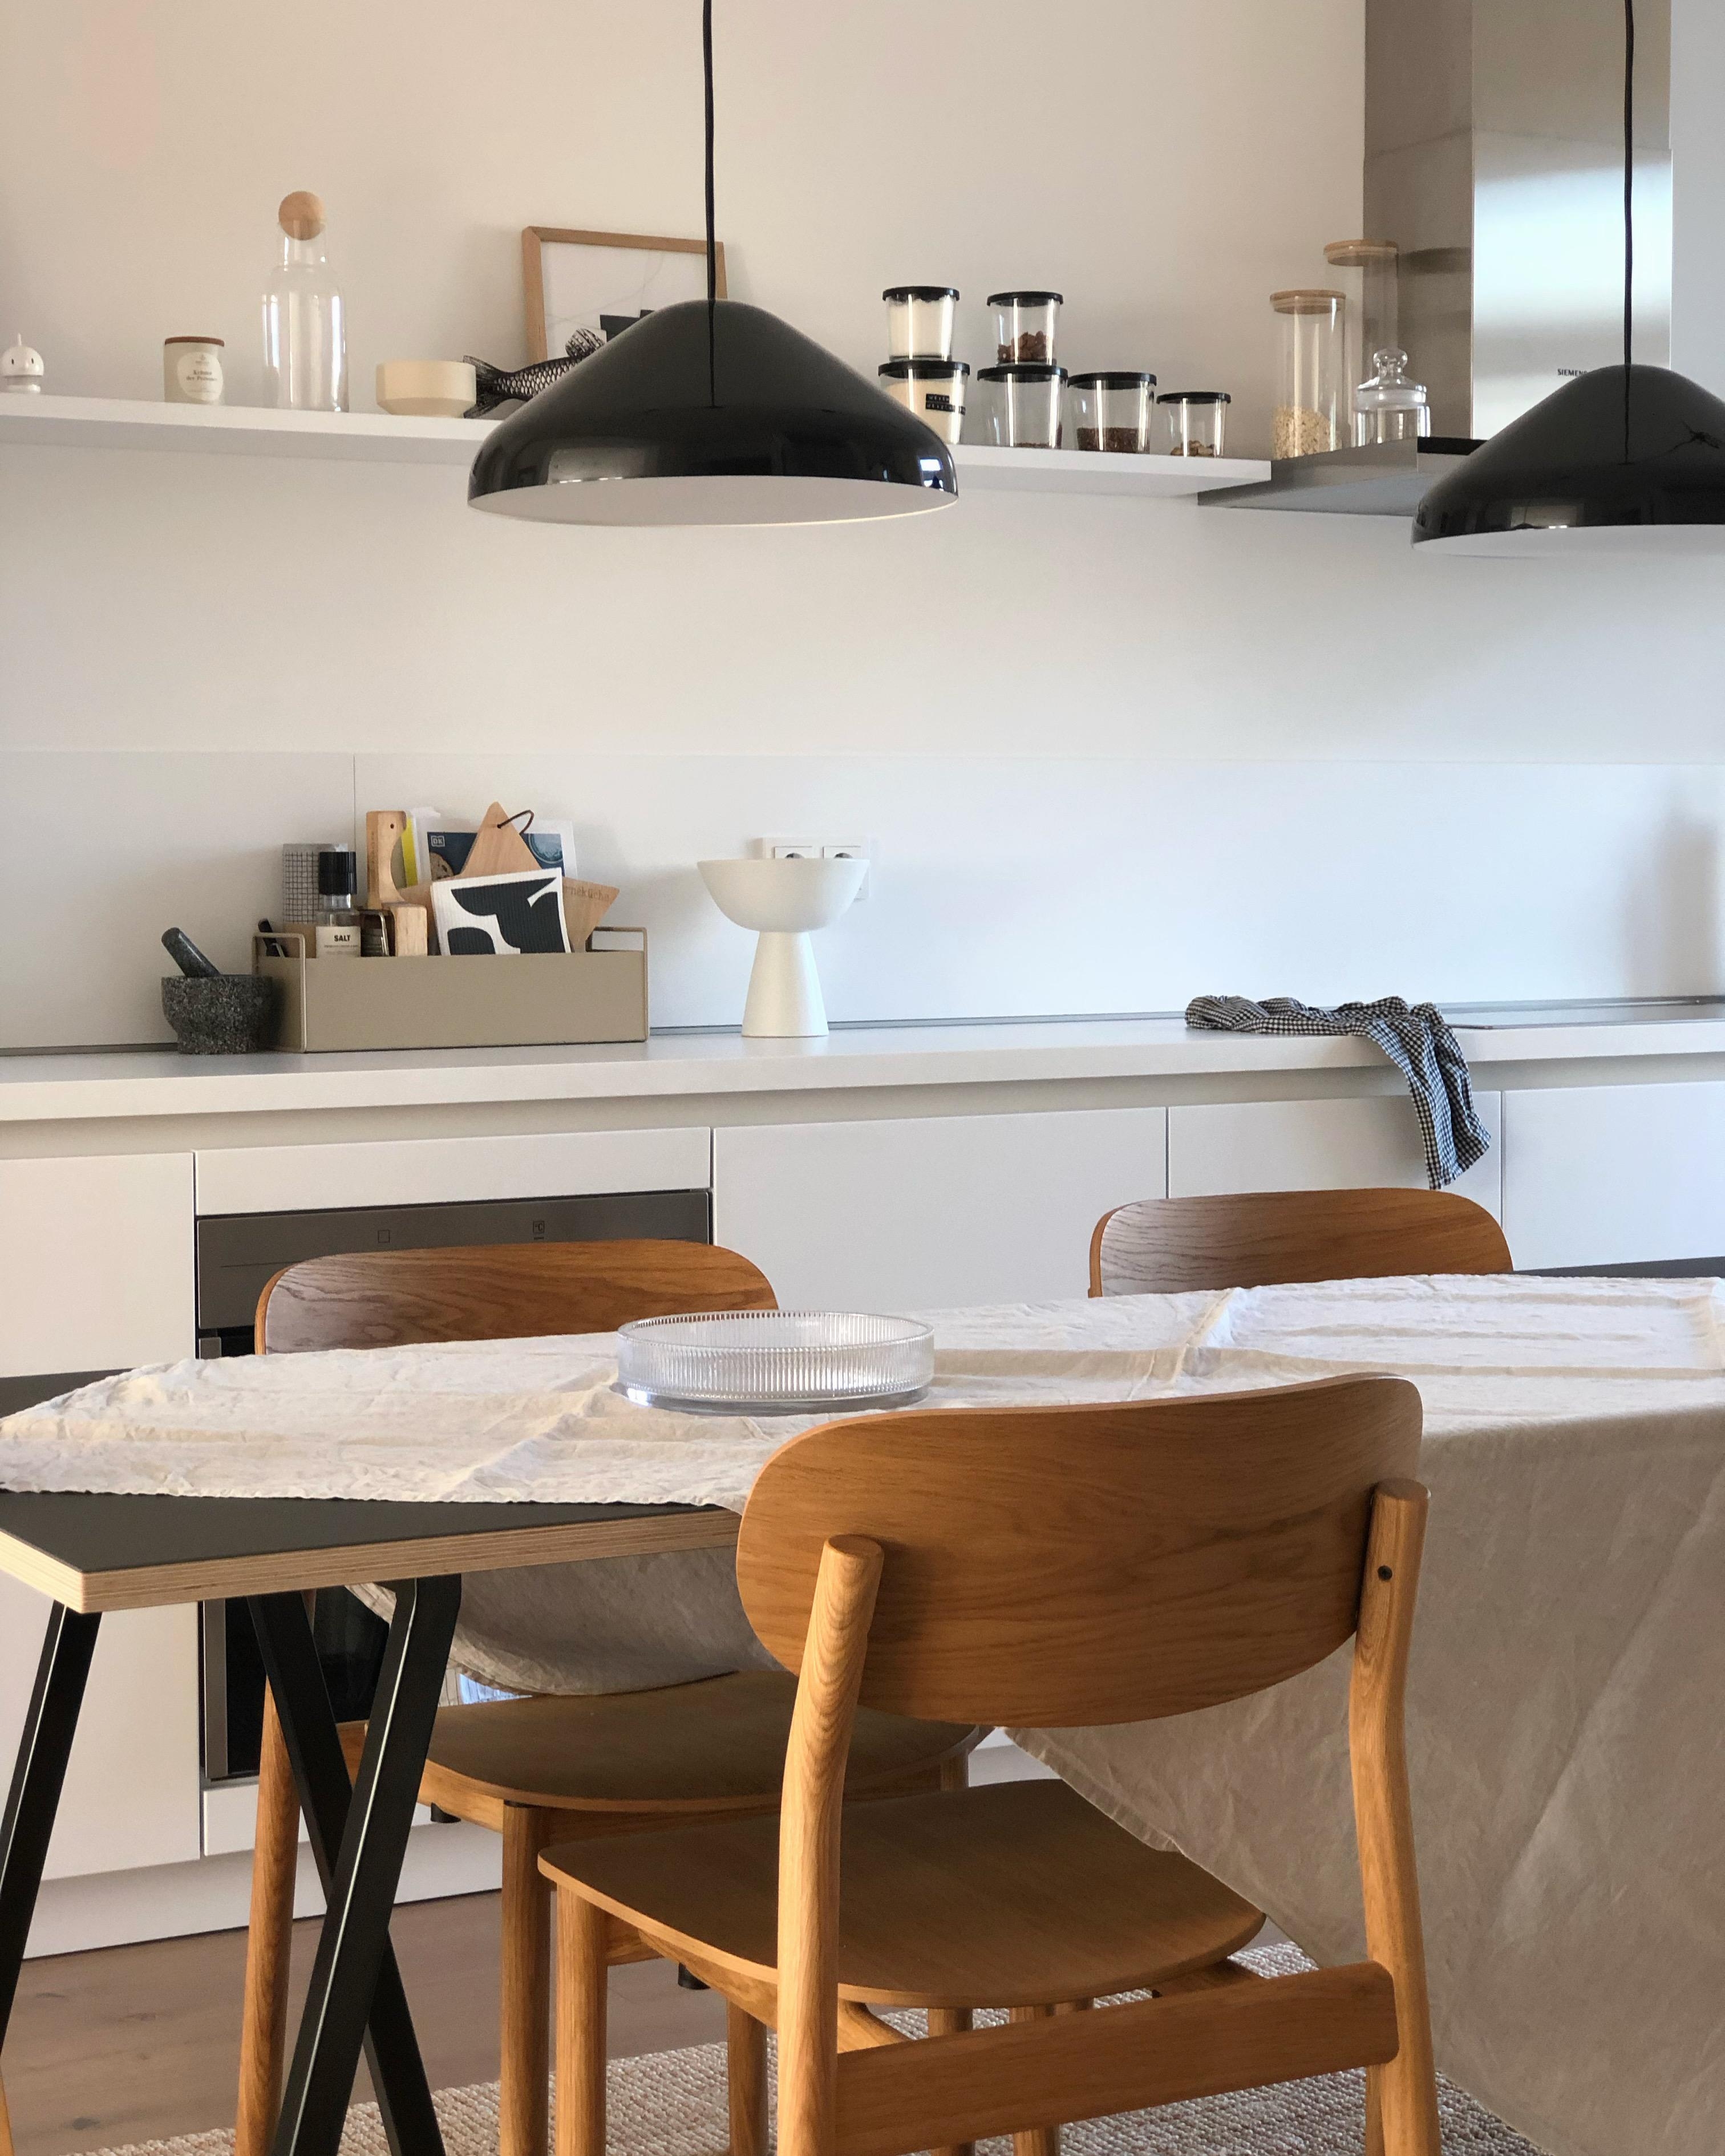 #küche #kücheninspo #kitchen #scandi #skandinavisch #esstisch #esszimmer #lampe #regal #interior #interieur #couchstyle